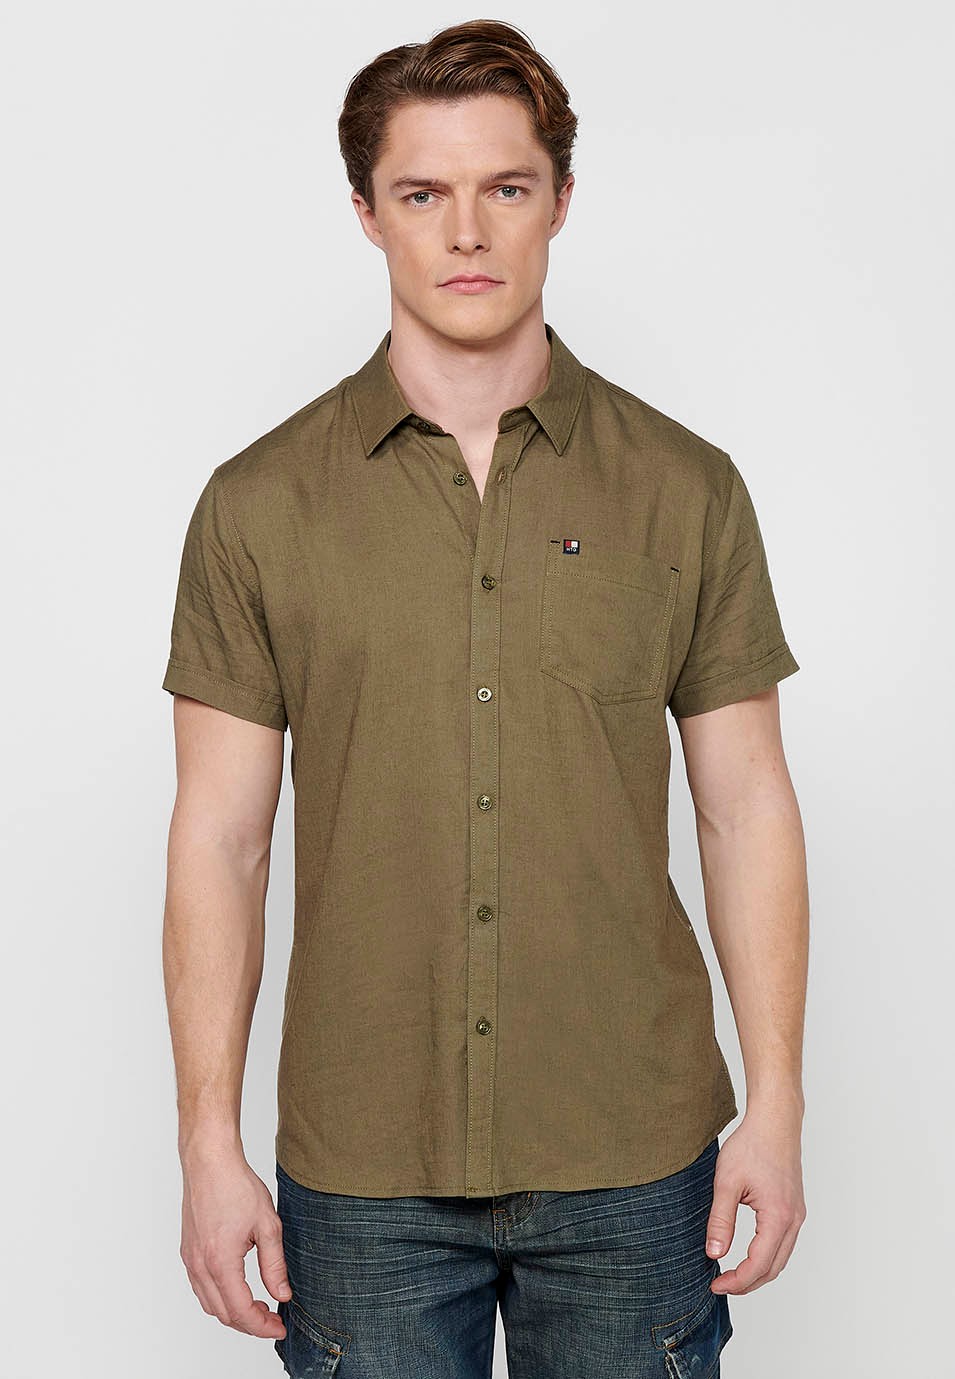 Short Sleeve Linen Shirt, khaki color, for men 2